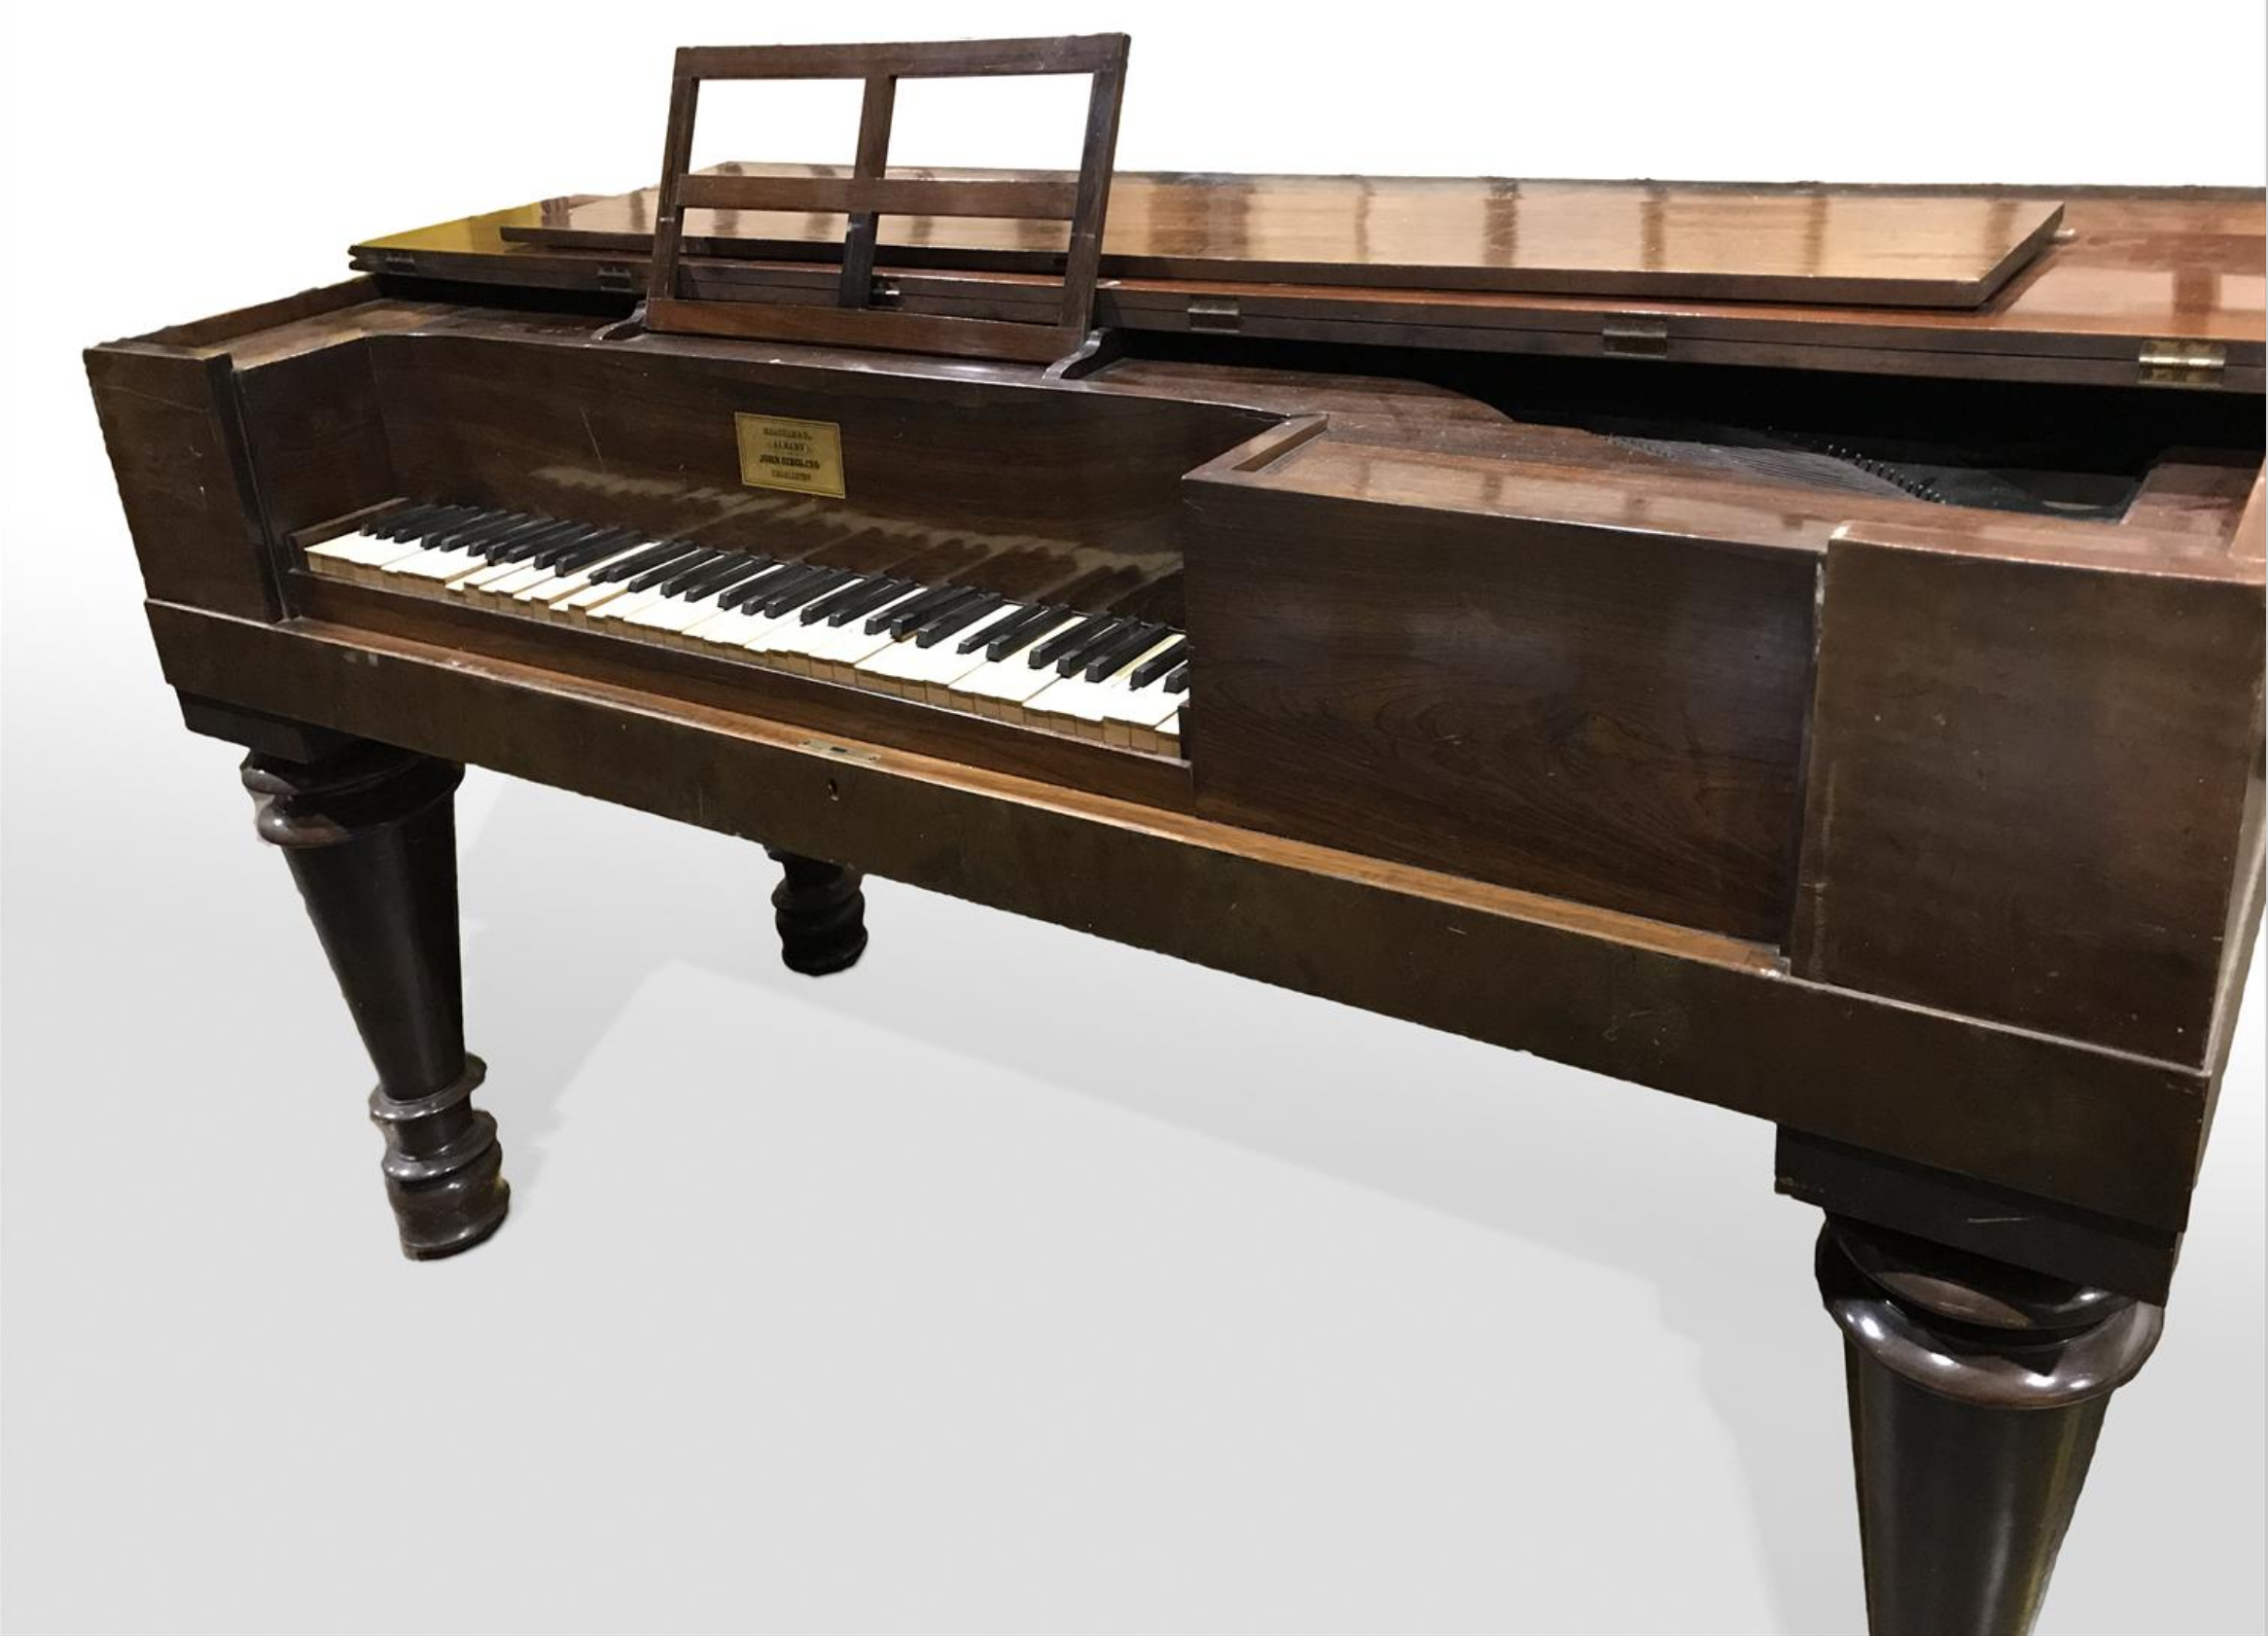 Meacham Piano, dated 1835